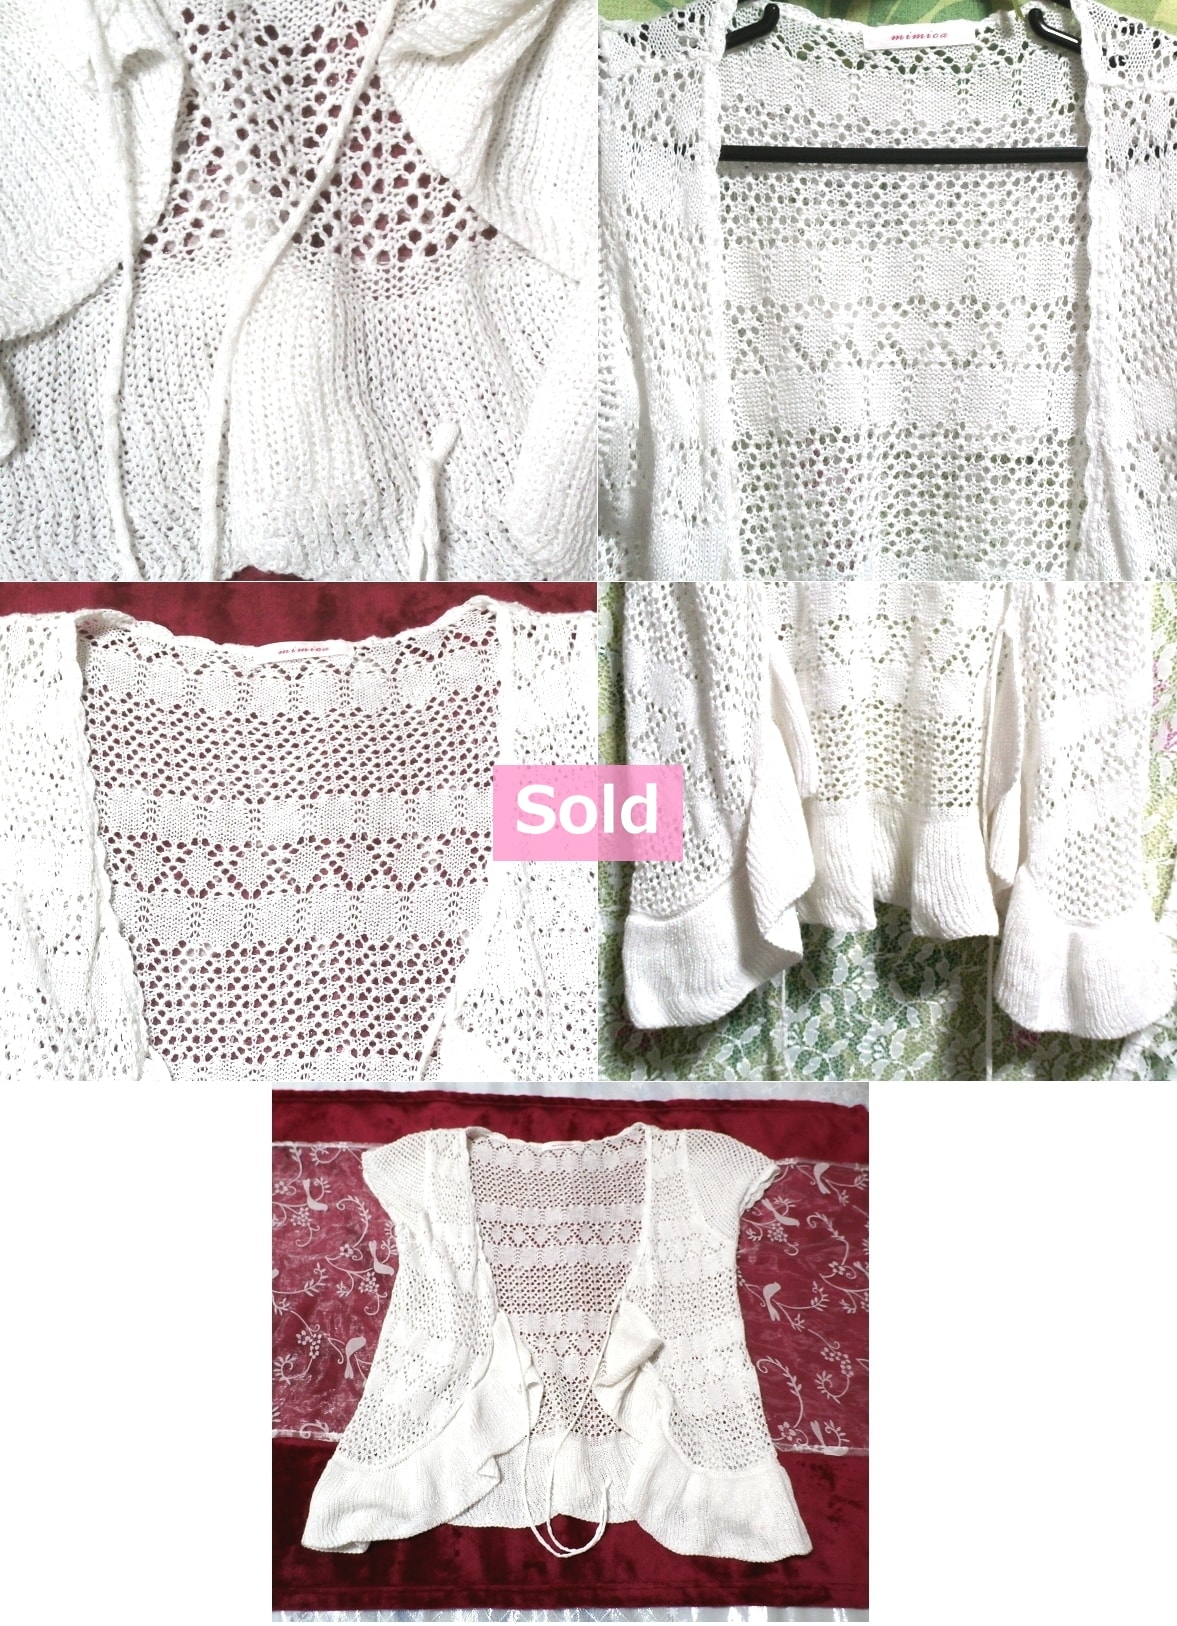 白編みレースカーディガン/コート/羽織/カーディガン White braided lace cardigan/coat/cardigan, レディースファッション&カーディガン&Mサイズ